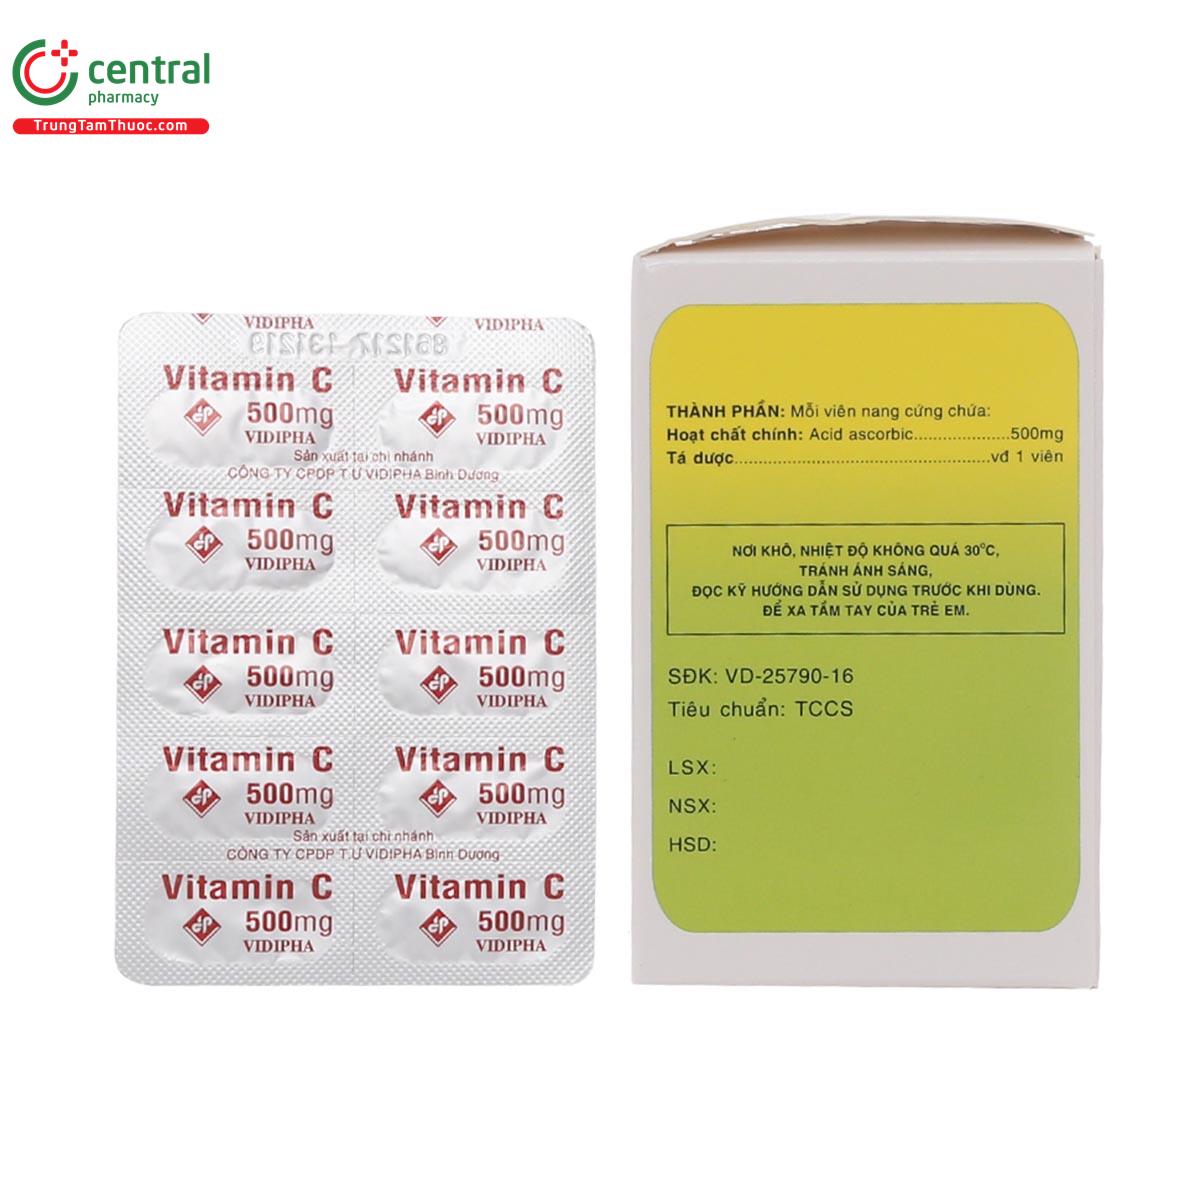 vitamin c 500mg vidipha vi 2 B0063